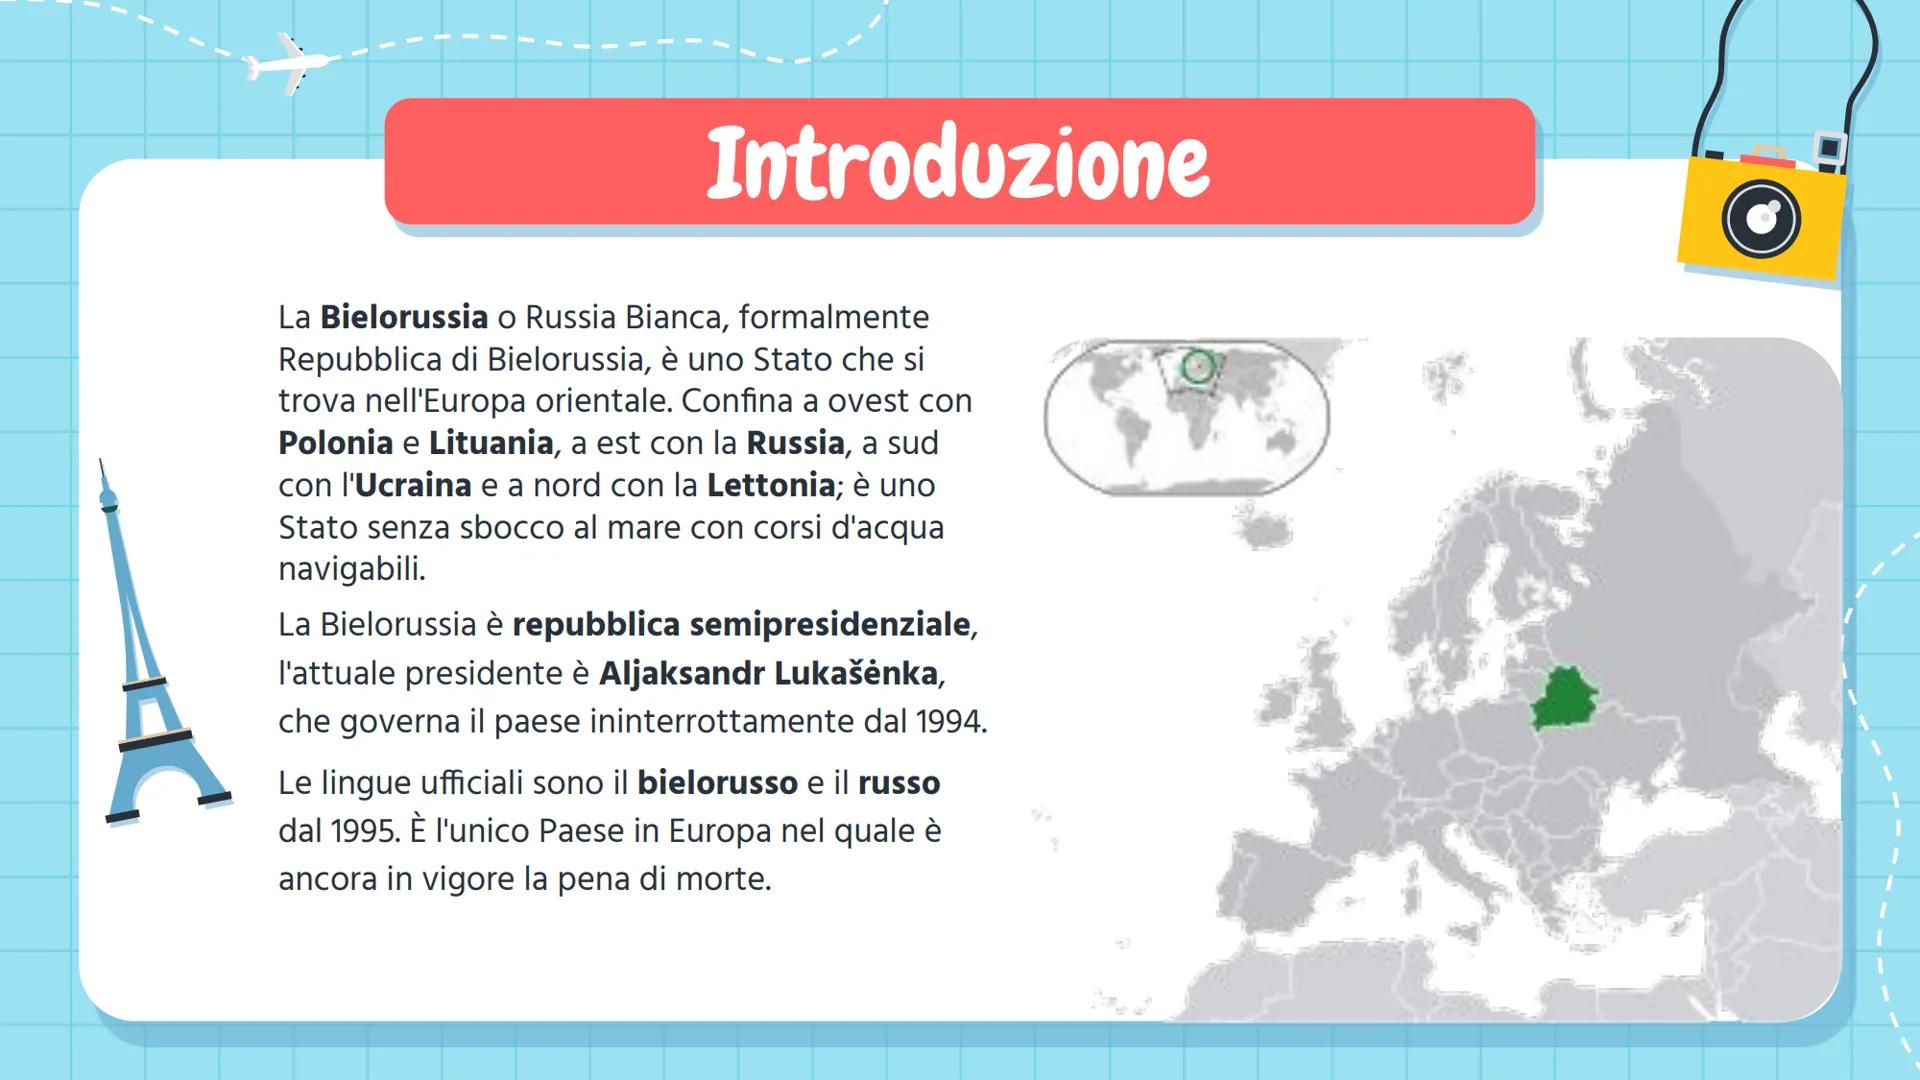 AIRPLAS
Gli stati europei:
La Bielorussia
Luce Joan Ruffato
PASSPORT 01
03
Introduzione
Le informazioni
essenziali sulla
Bielorussia
Società